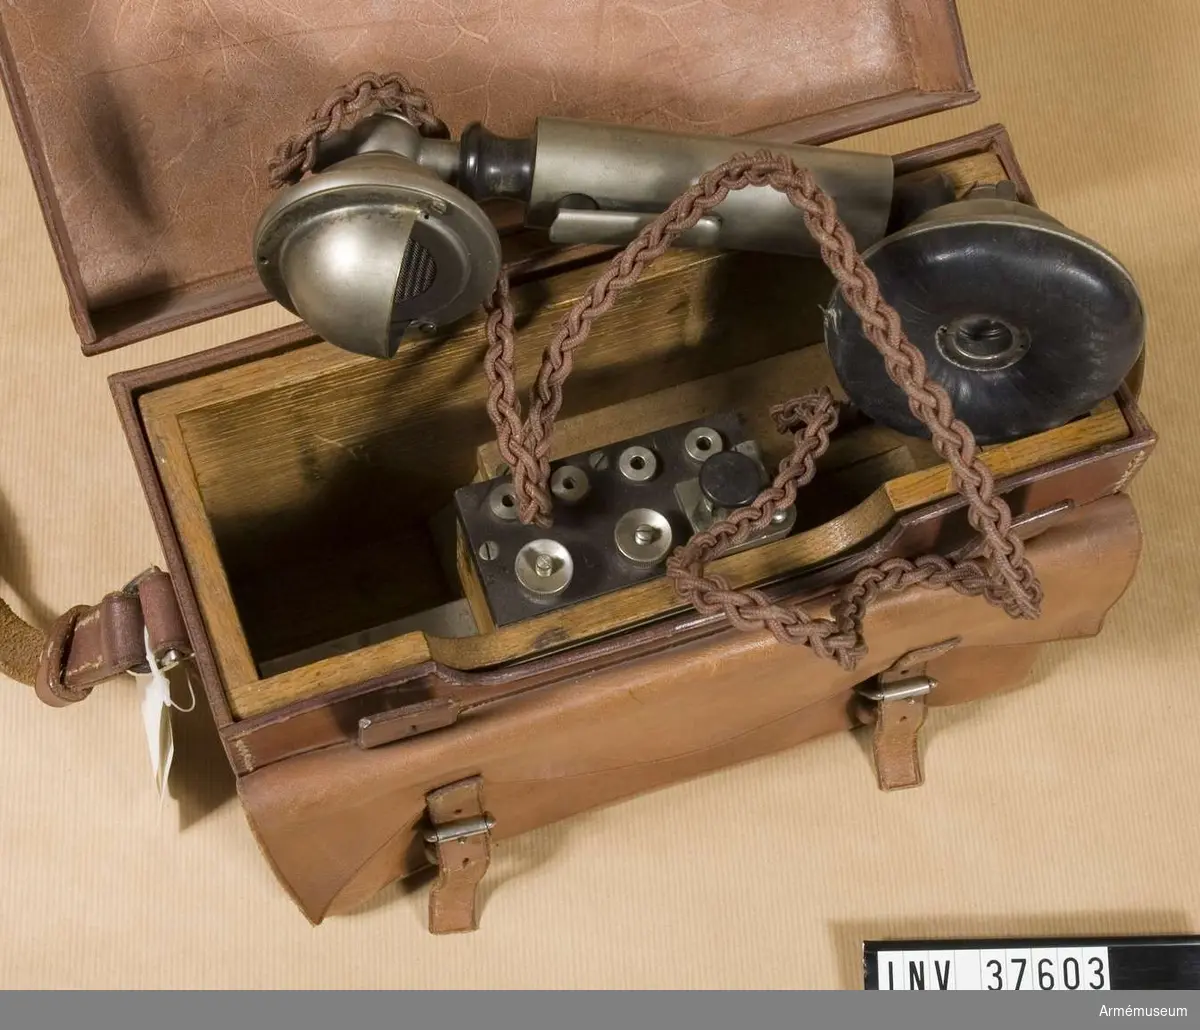 Grupp H I.
Fälttelefonapparat m/1926 MA 87.
För telefonering och telegrafering.